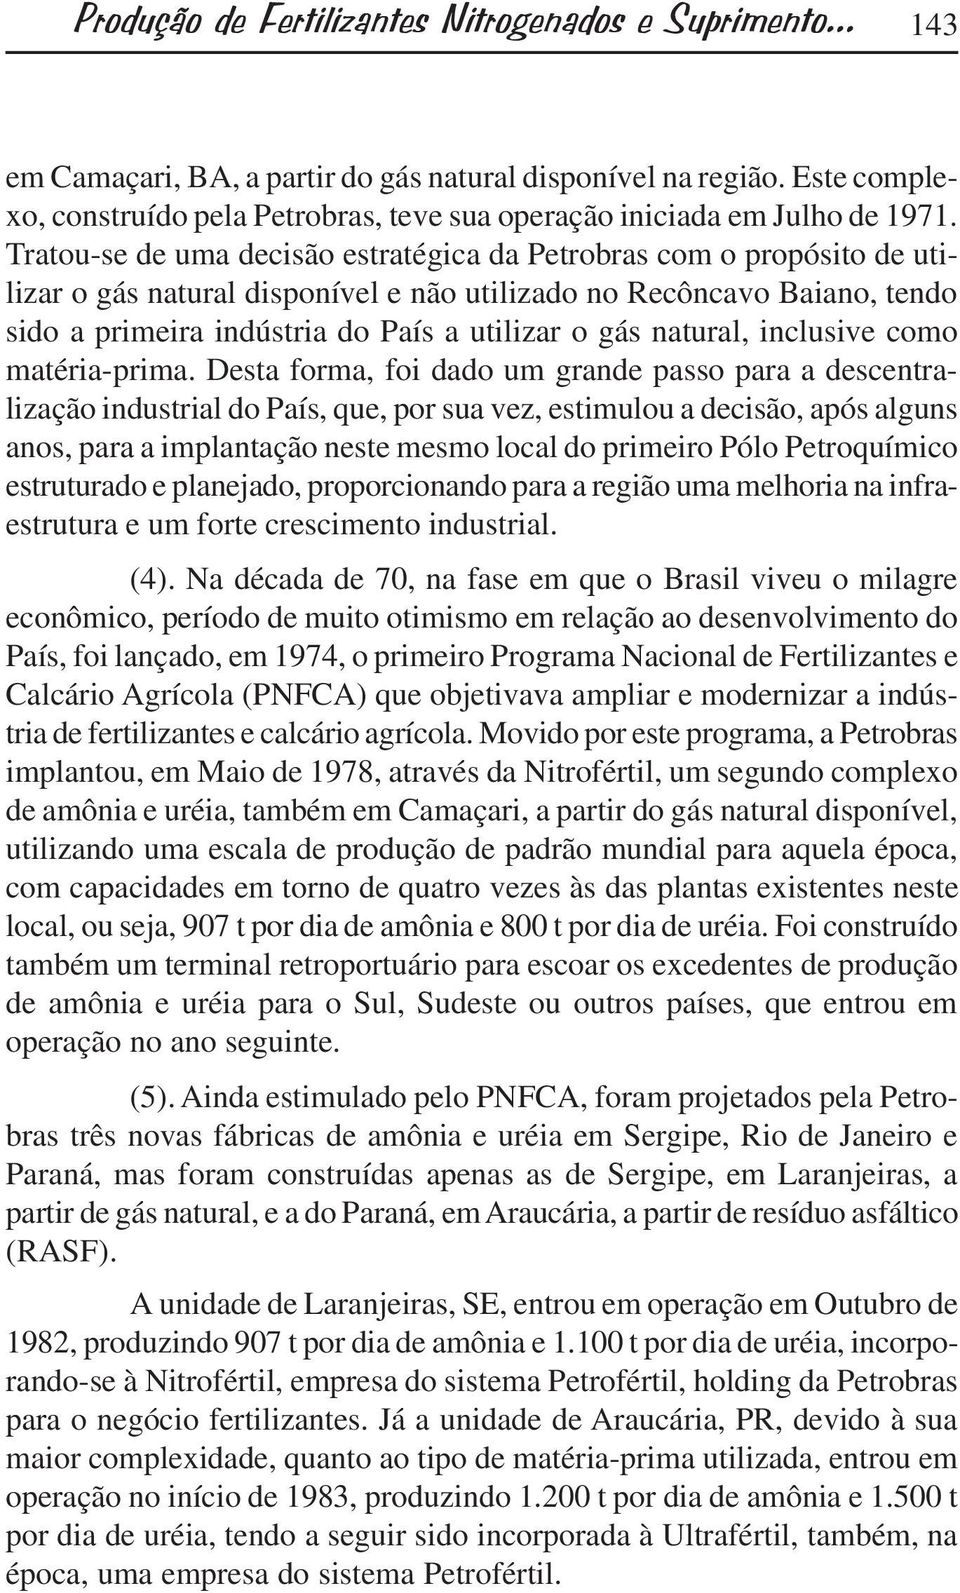 Tratou-se de uma decisão estratégica da Petrobras com o propósito de utilizar o gás natural disponível e não utilizado no Recôncavo Baiano, tendo sido a primeira indústria do País a utilizar o gás